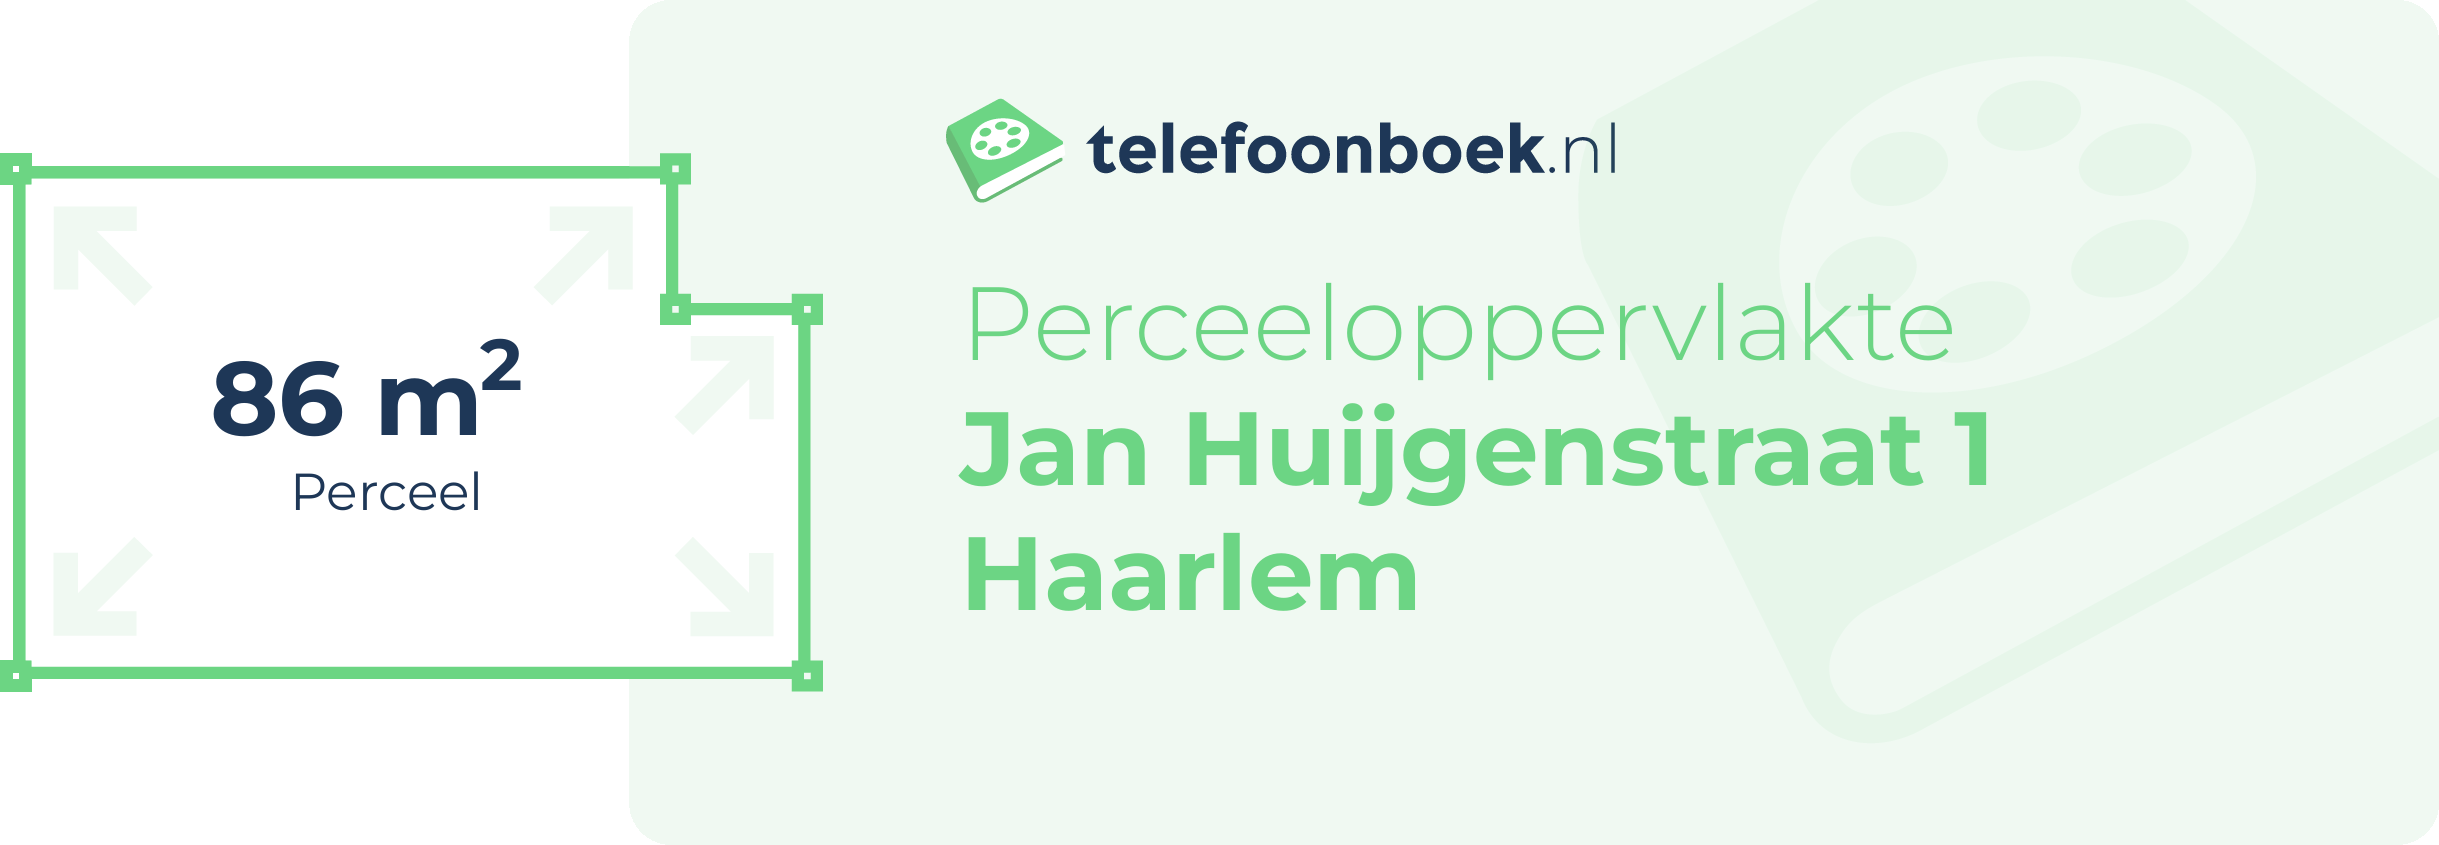 Perceeloppervlakte Jan Huijgenstraat 1 Haarlem